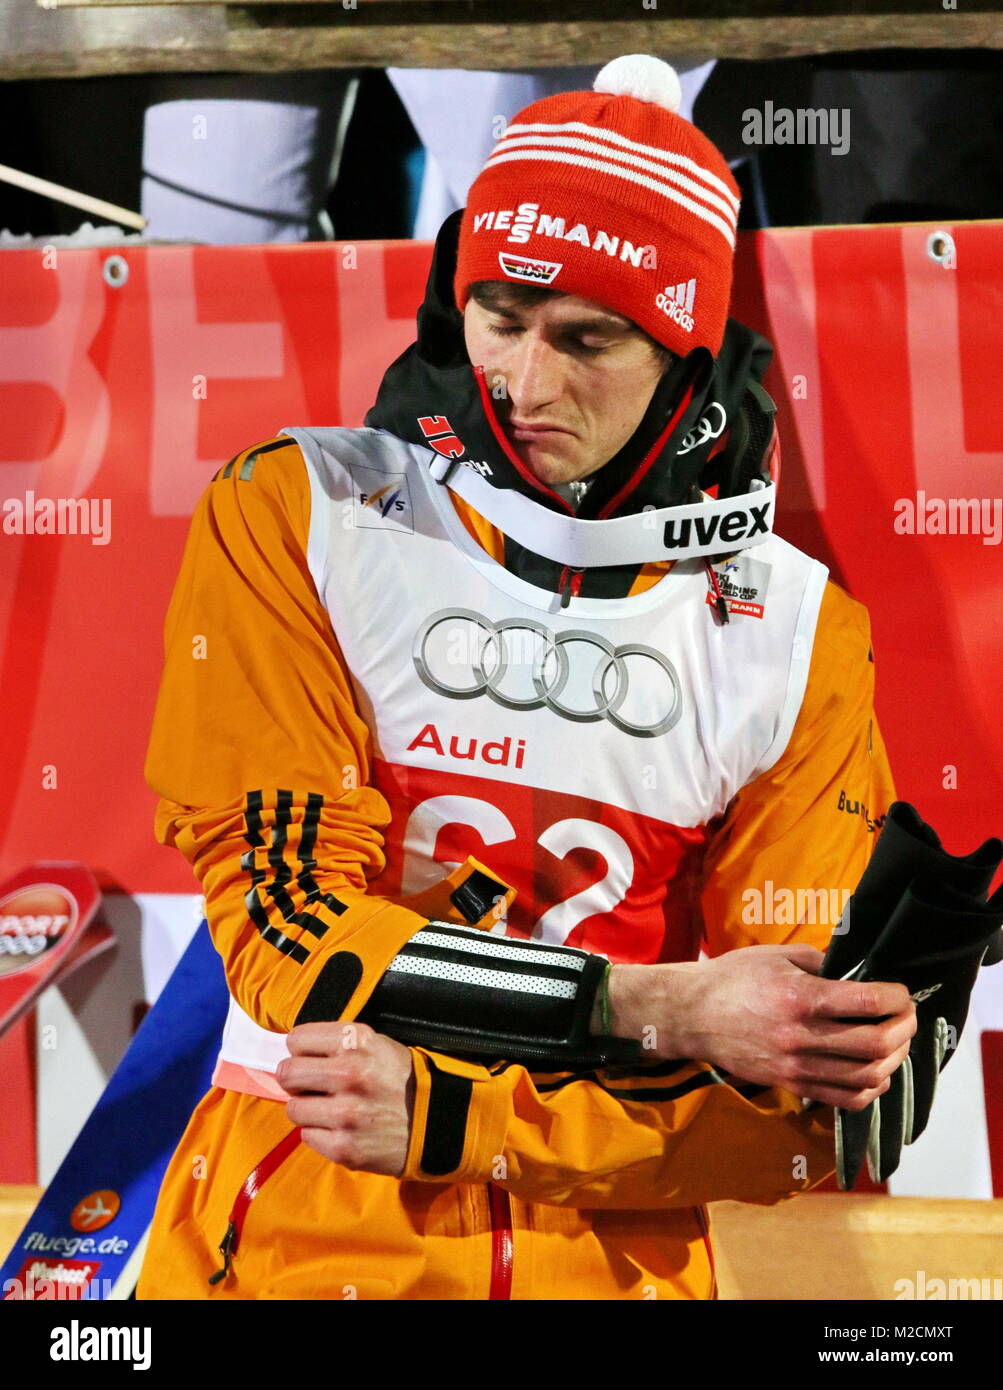 Richard FREITAG, Skispringer, Qualfikation für 63. Vierschanzentournee Auftaktspringen Oberstdorf Stock Photo